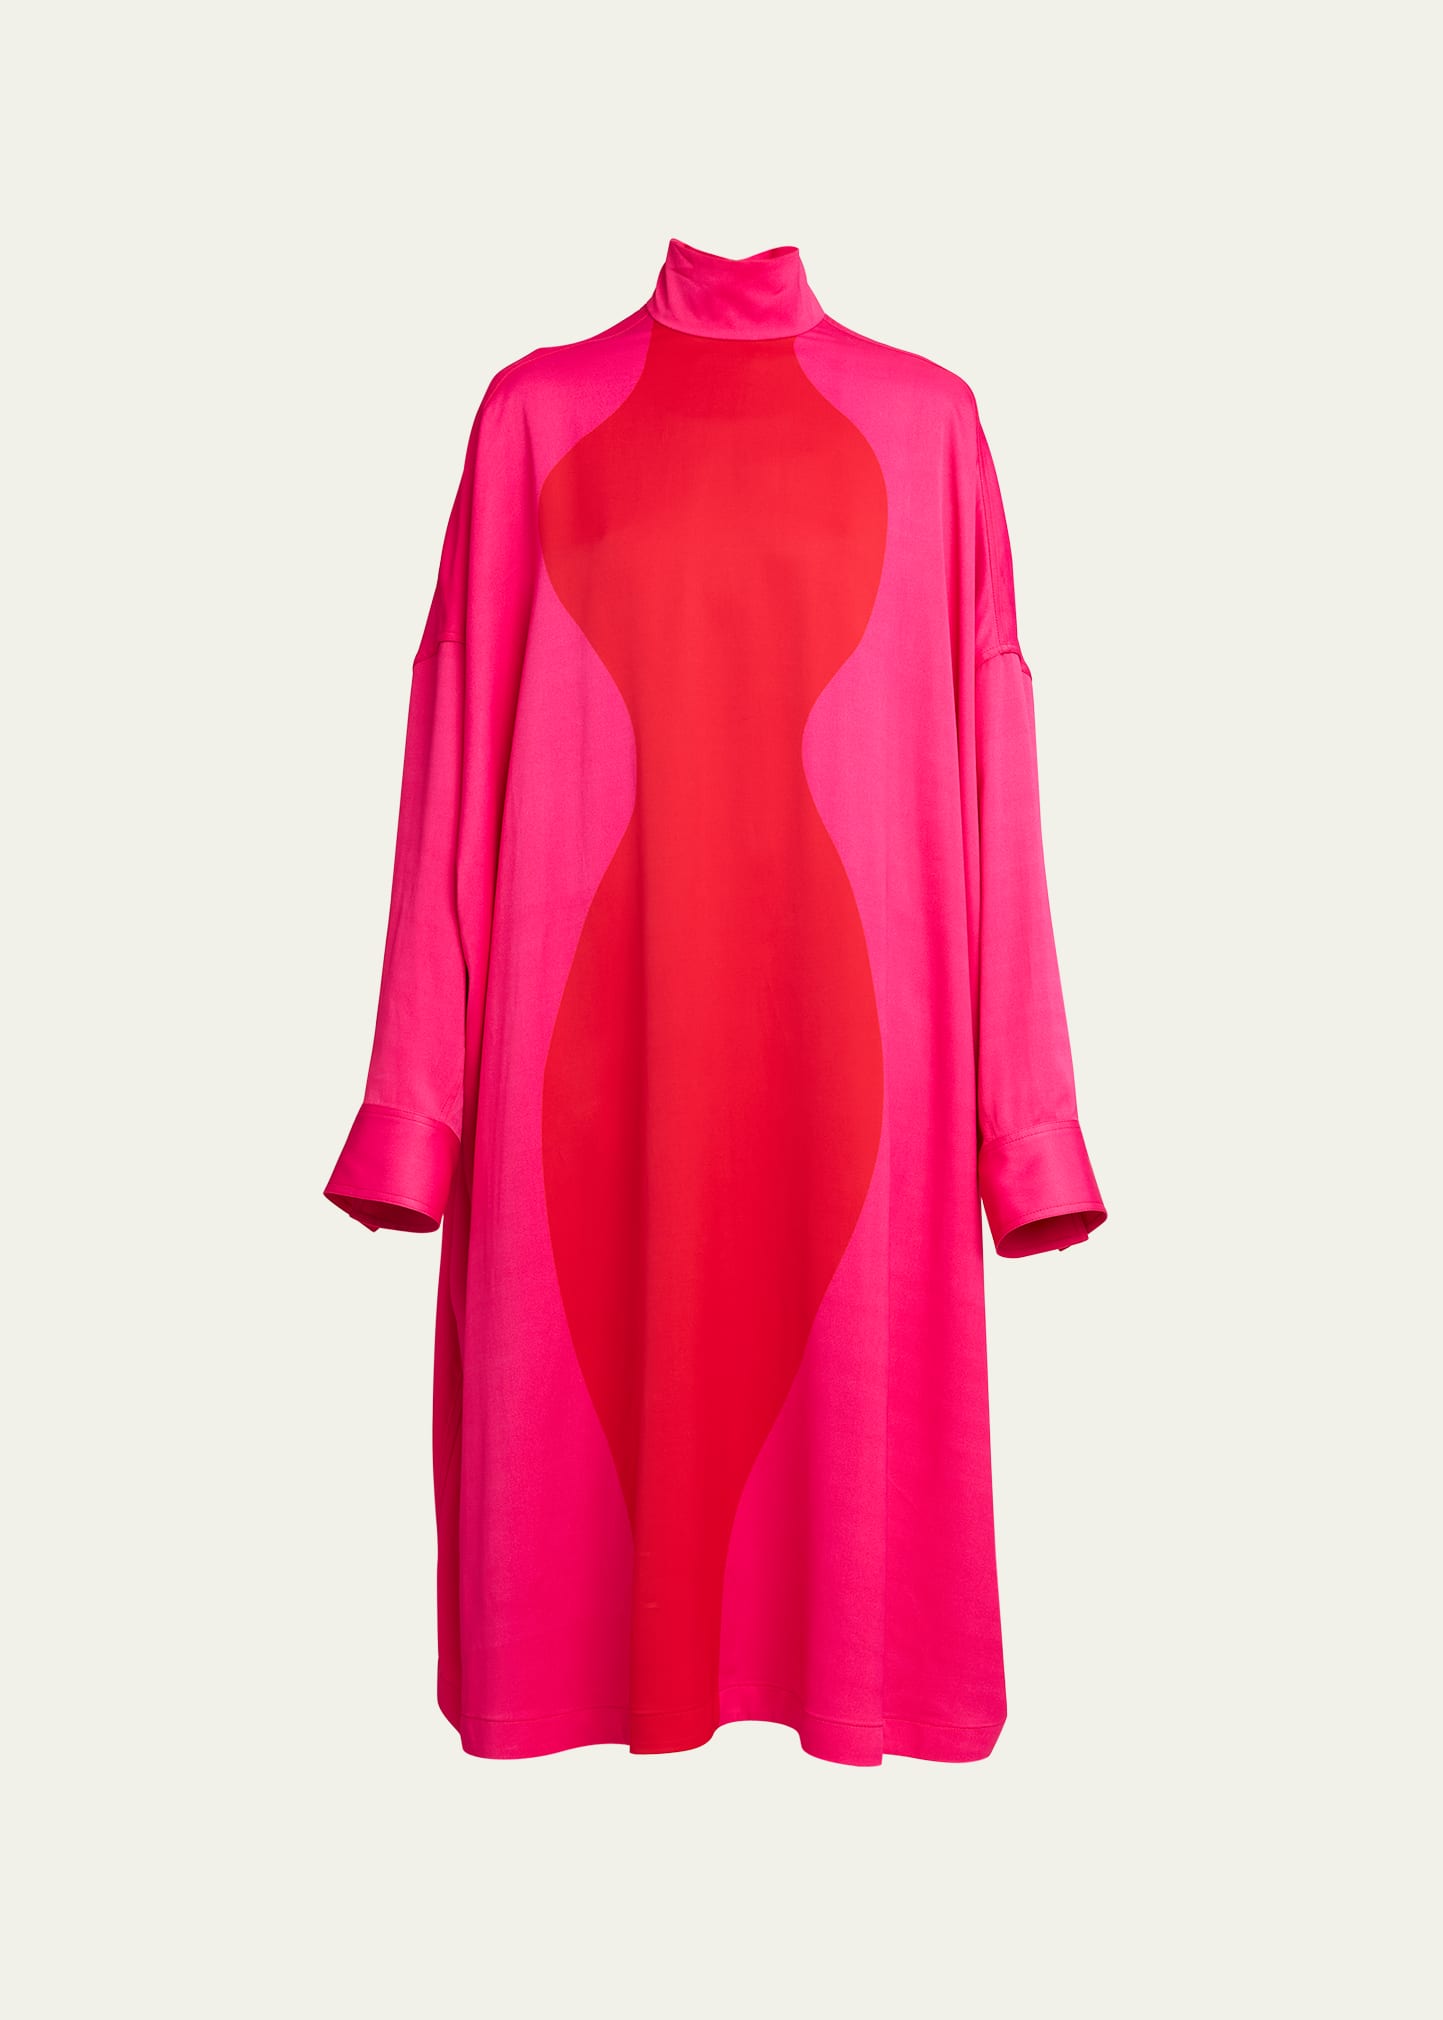 Ferragamo Bicolor Stretch Satin Midi Dress In Fucsia/new